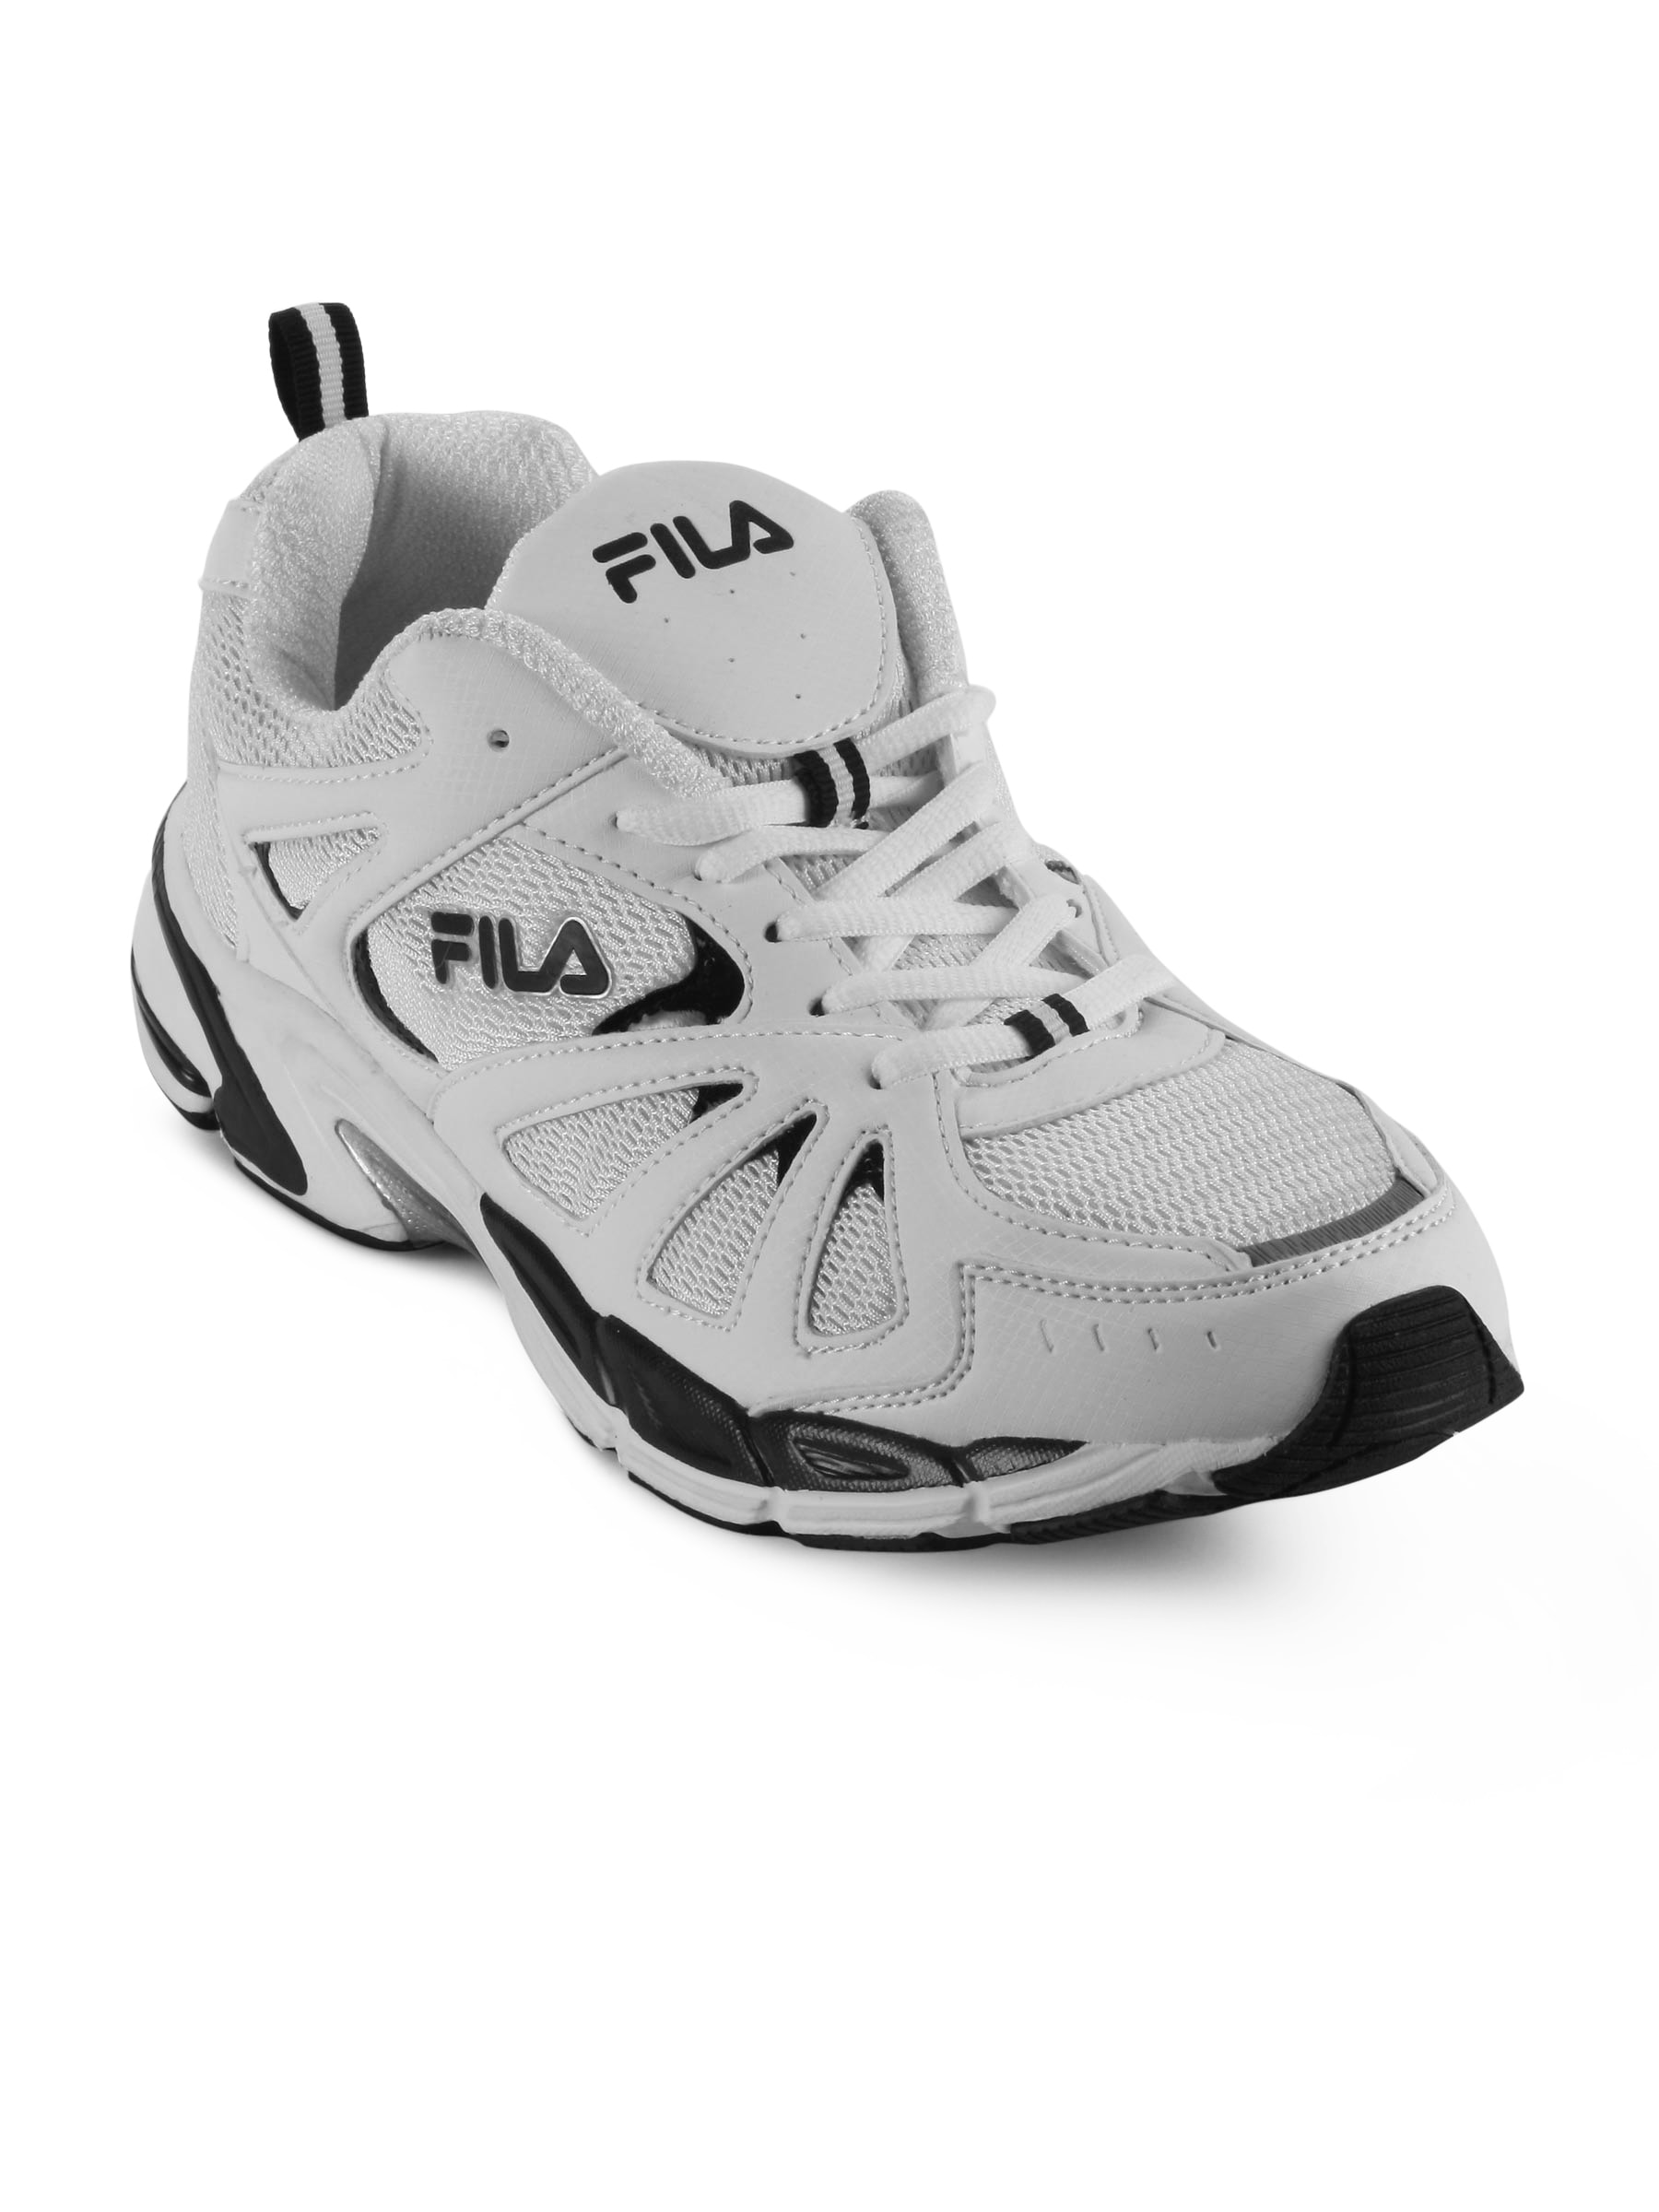 FILA Men White Volcano Sports Shoes